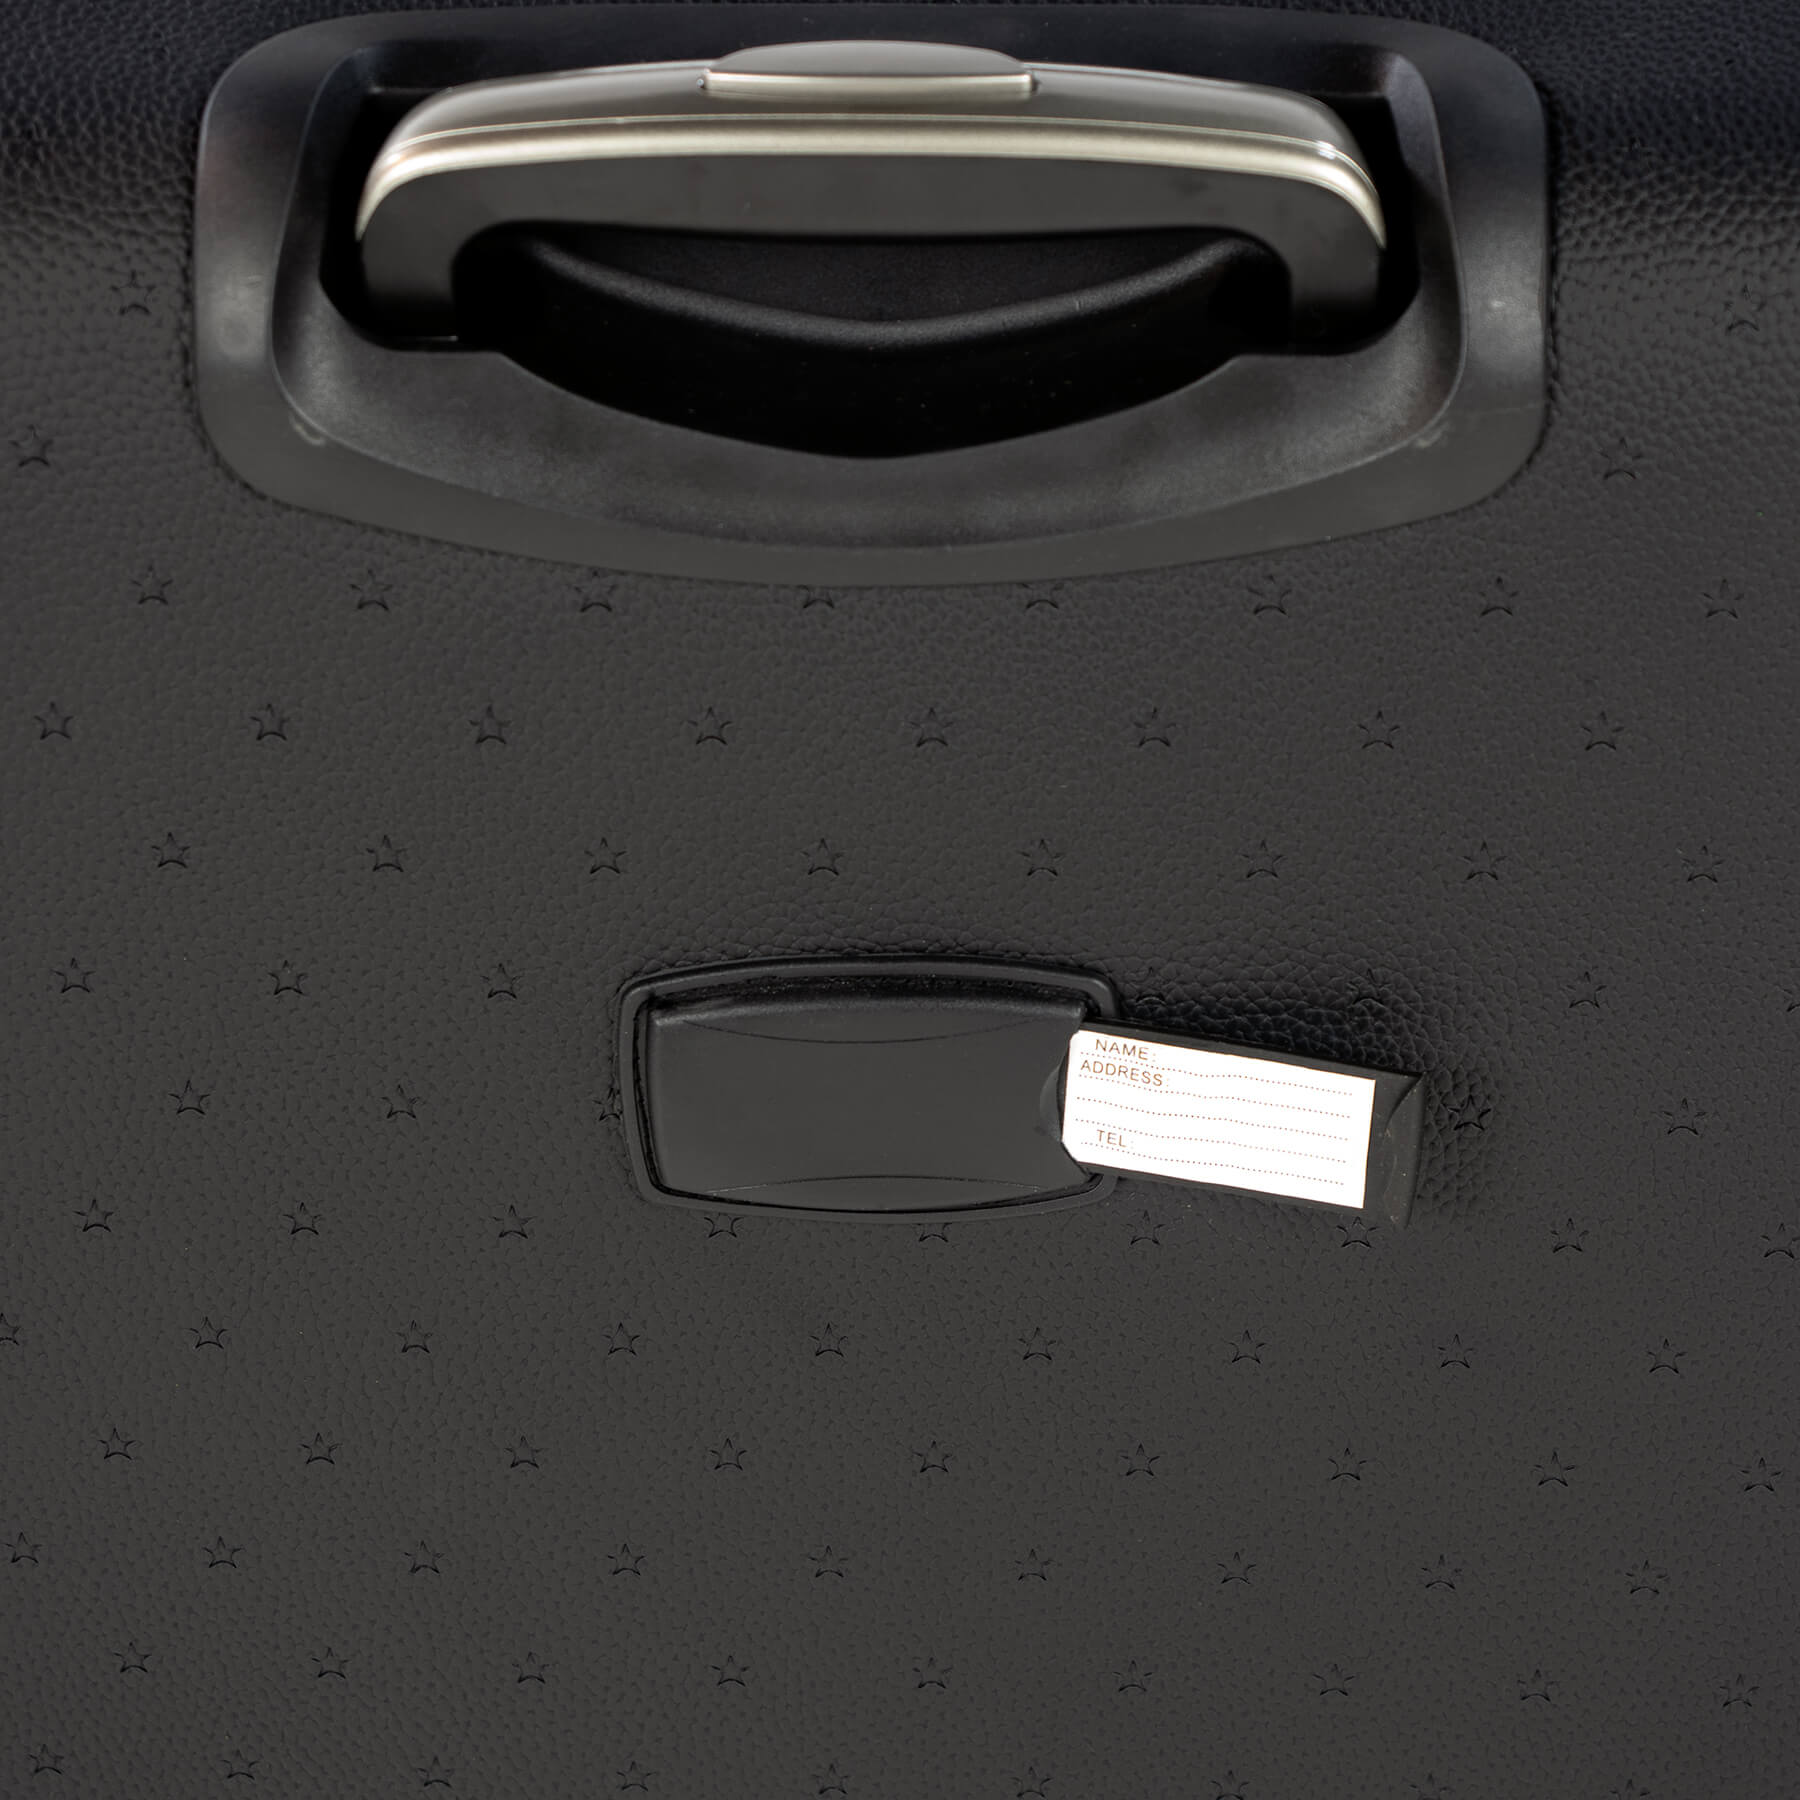 Elegante set borsone + valigia London in eco pelle nera Pasito a Pasito